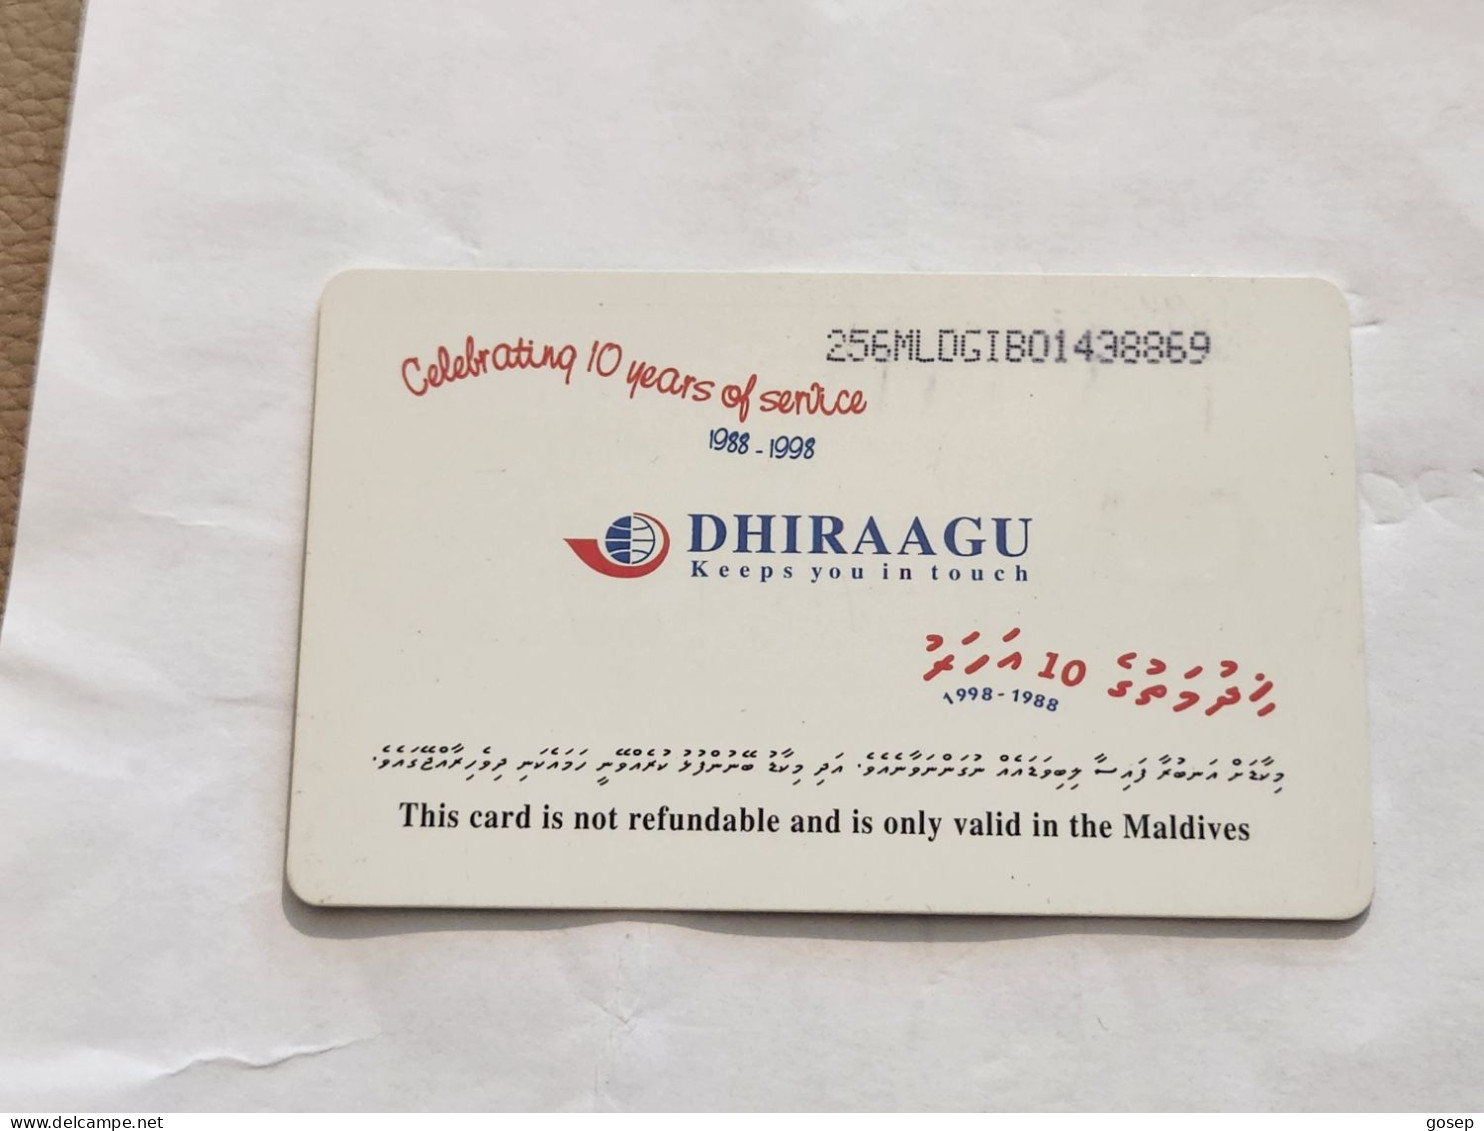 Maldives-(256MLDGIB-MAL-C-01)-save The Turtle-(42)-(RF30)-(256MLDGIB01438869)-used Card+1card Prepiad Free - Maldiven